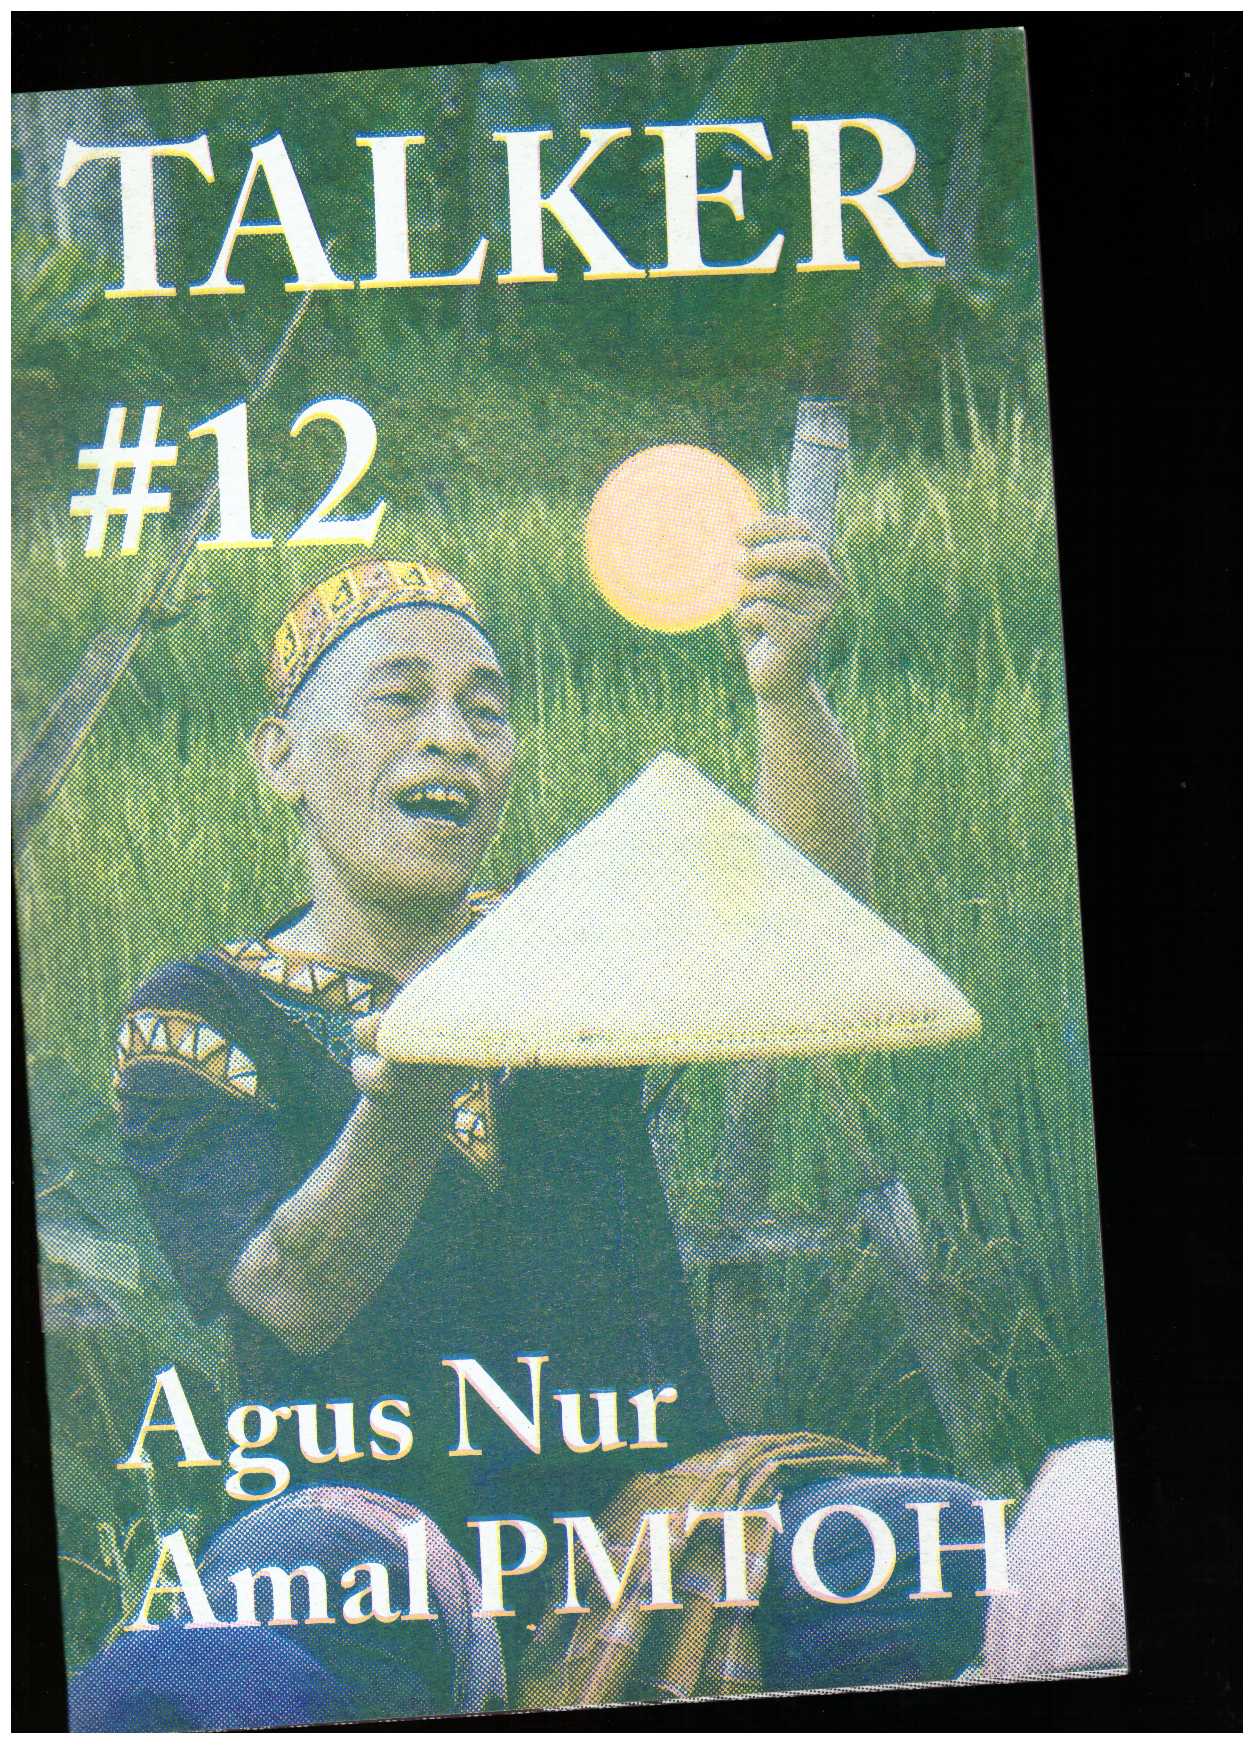 PMTOH, Agus Nur Amal; BAILEY, Giles (ed.) - Talker #12: Agus Nur Amal PMTOH